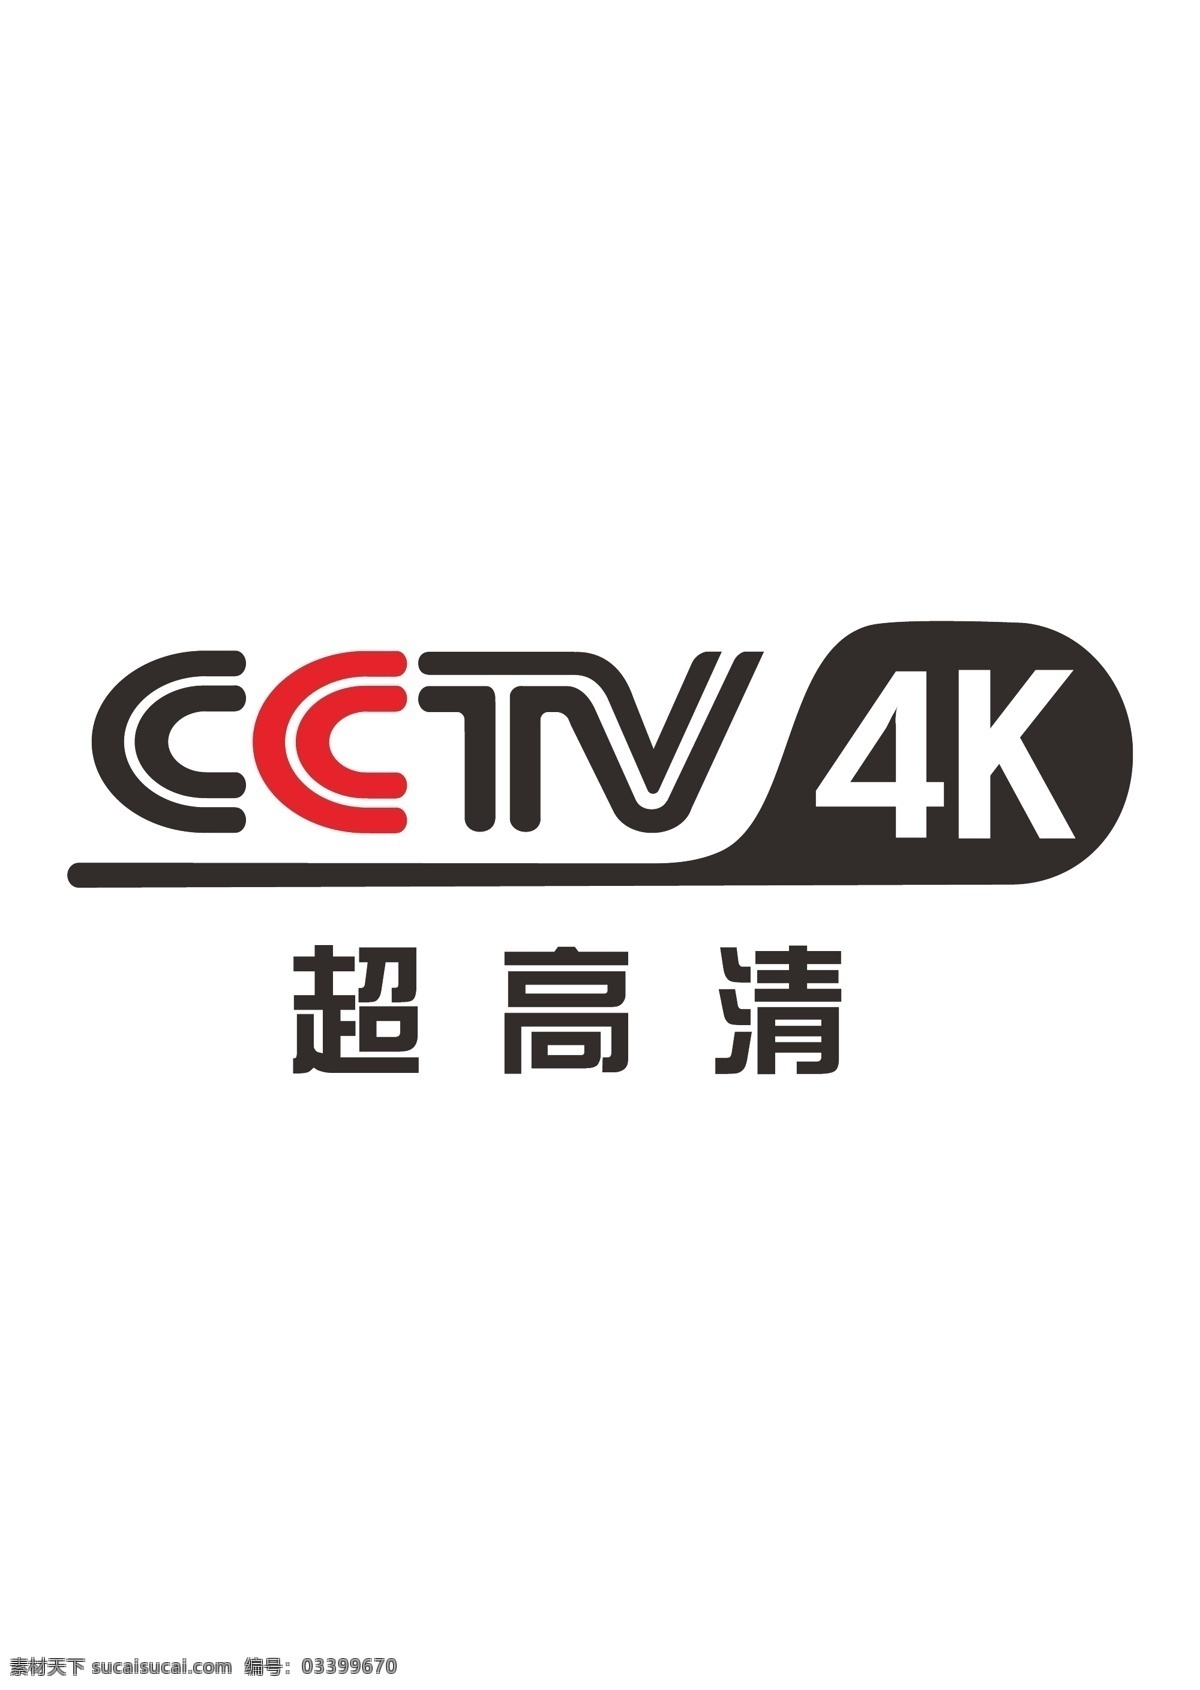 央视 cctv4k 超 高清 频道 台标 cctv 4k 超高清 logo 标志 超清 电视台 中央 中央电视台 北京 图标 电视 电视台标 标志图标 公共标识标志